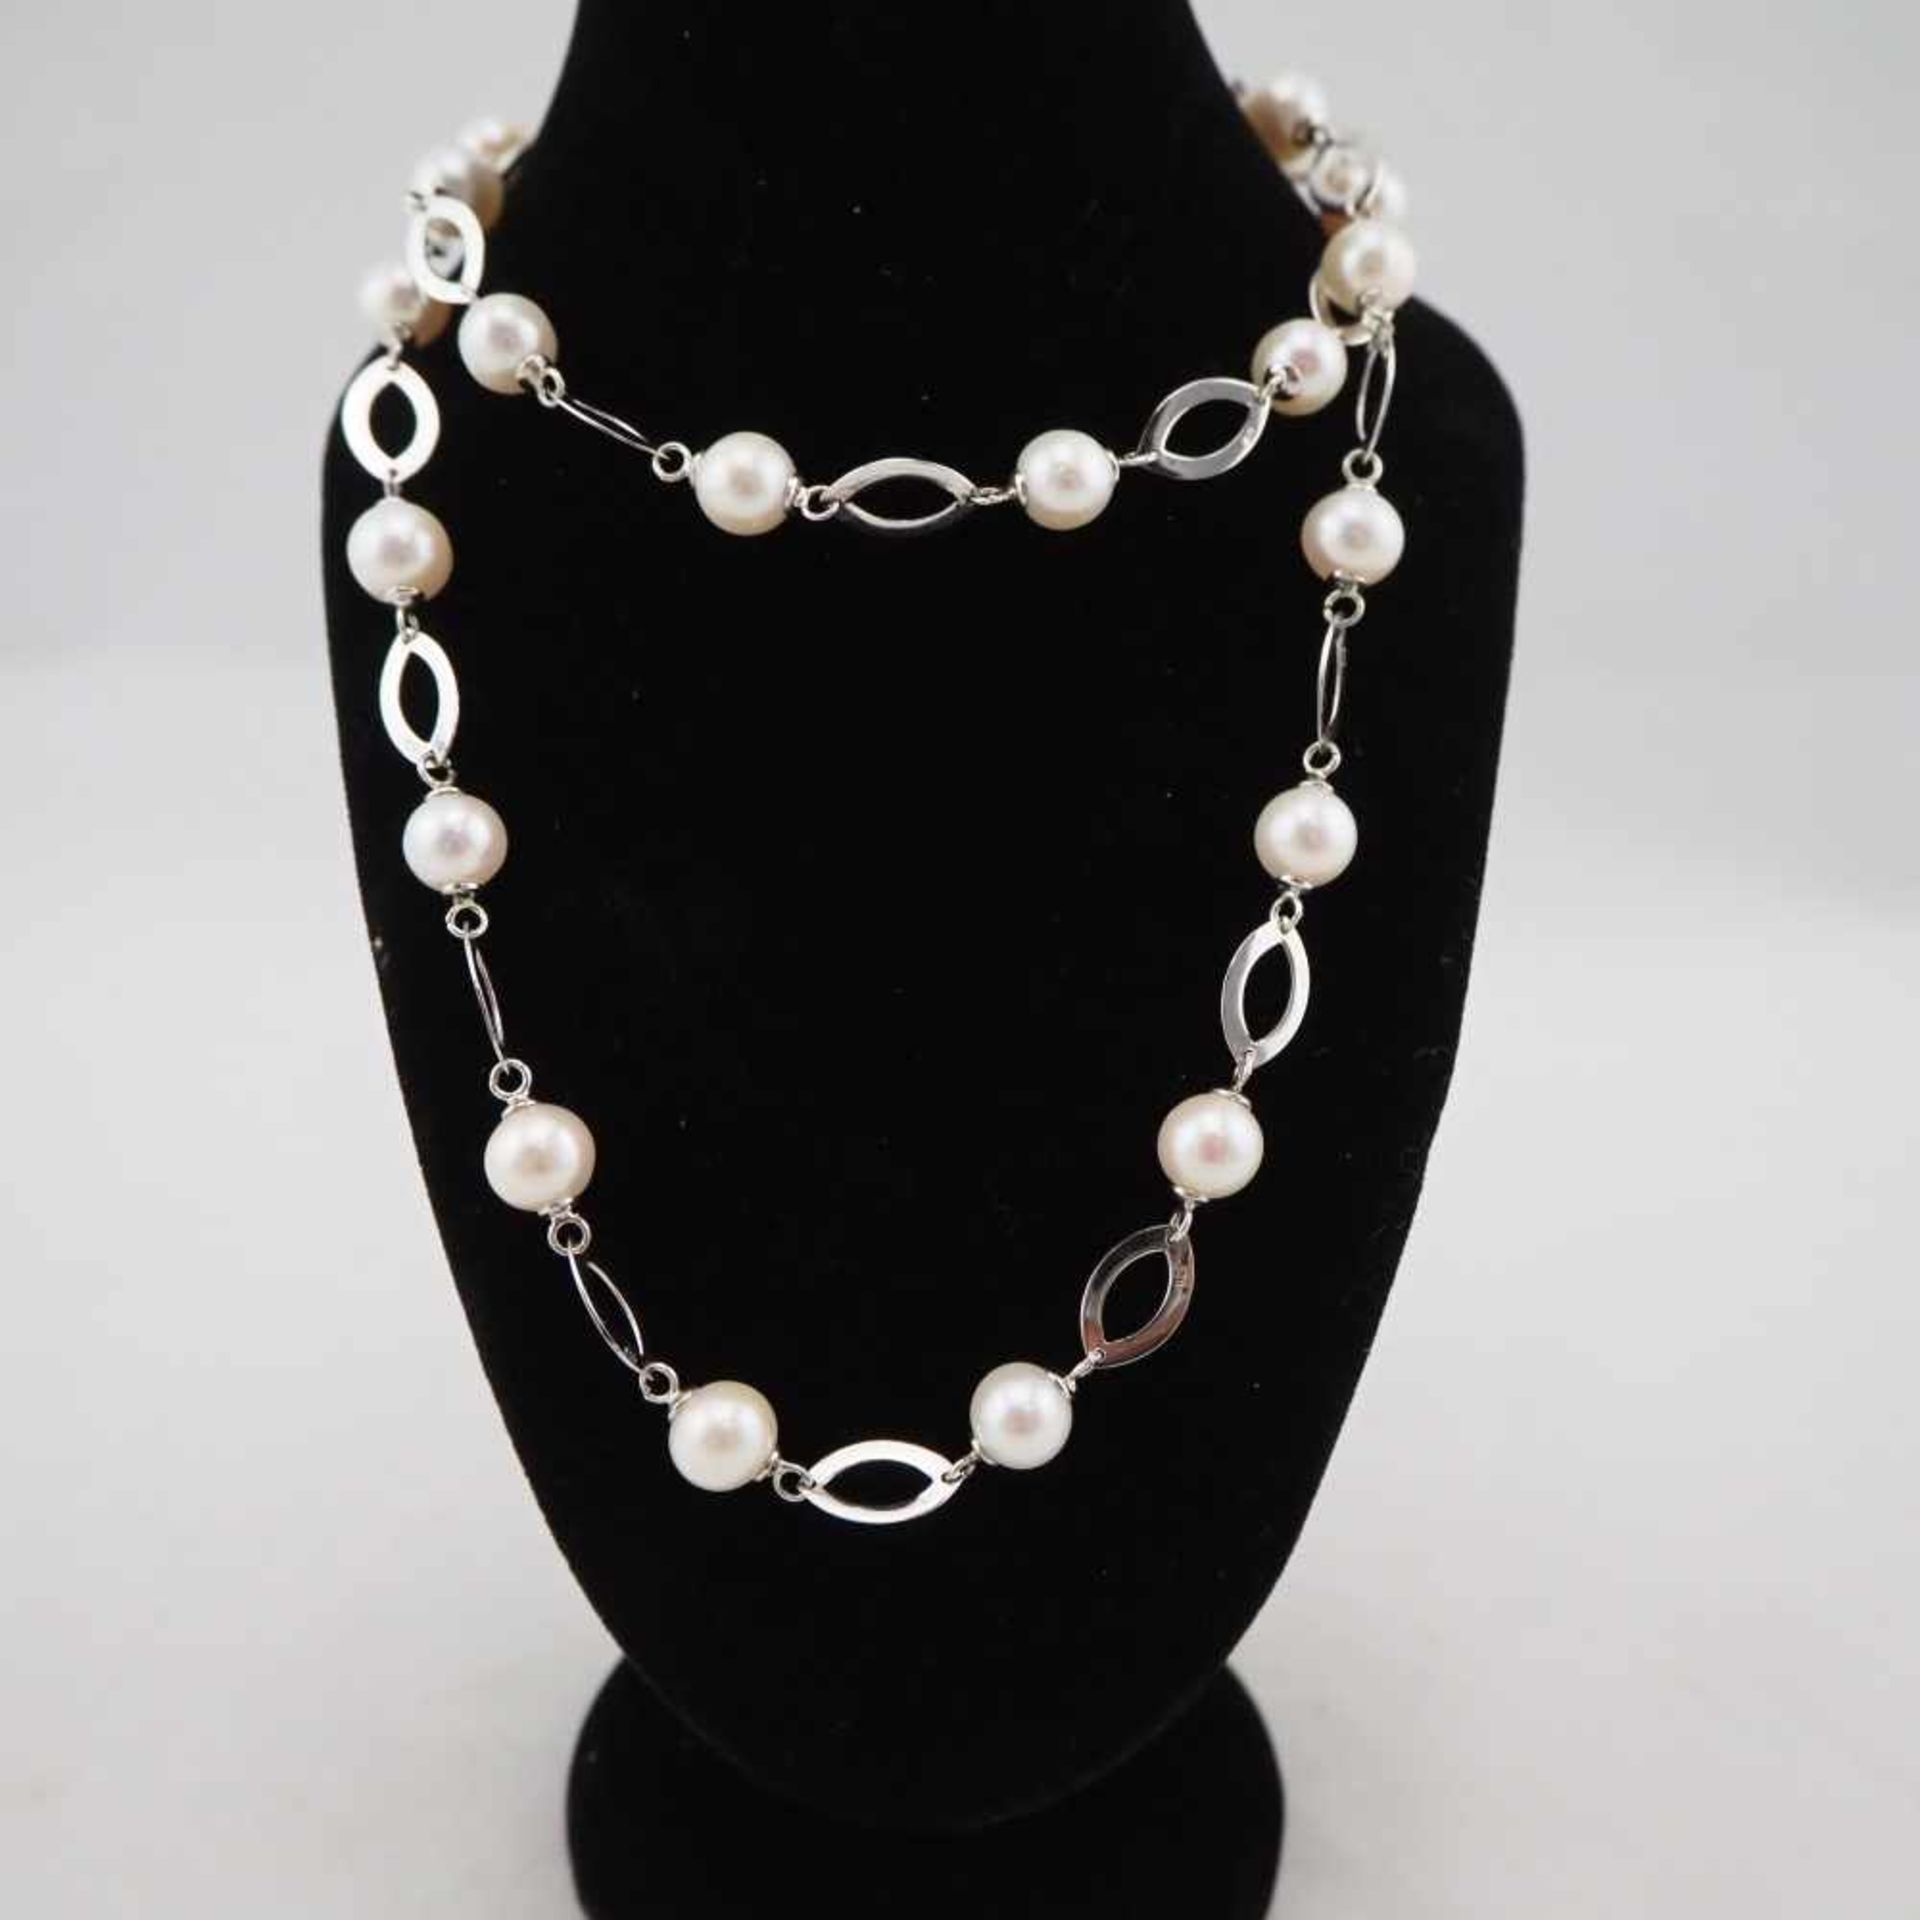 Perlenkette mit 925er Silber Kettenglieder26,9g Gesamtgewicht, 71cm Gesamtlänge (kürzbar), guter